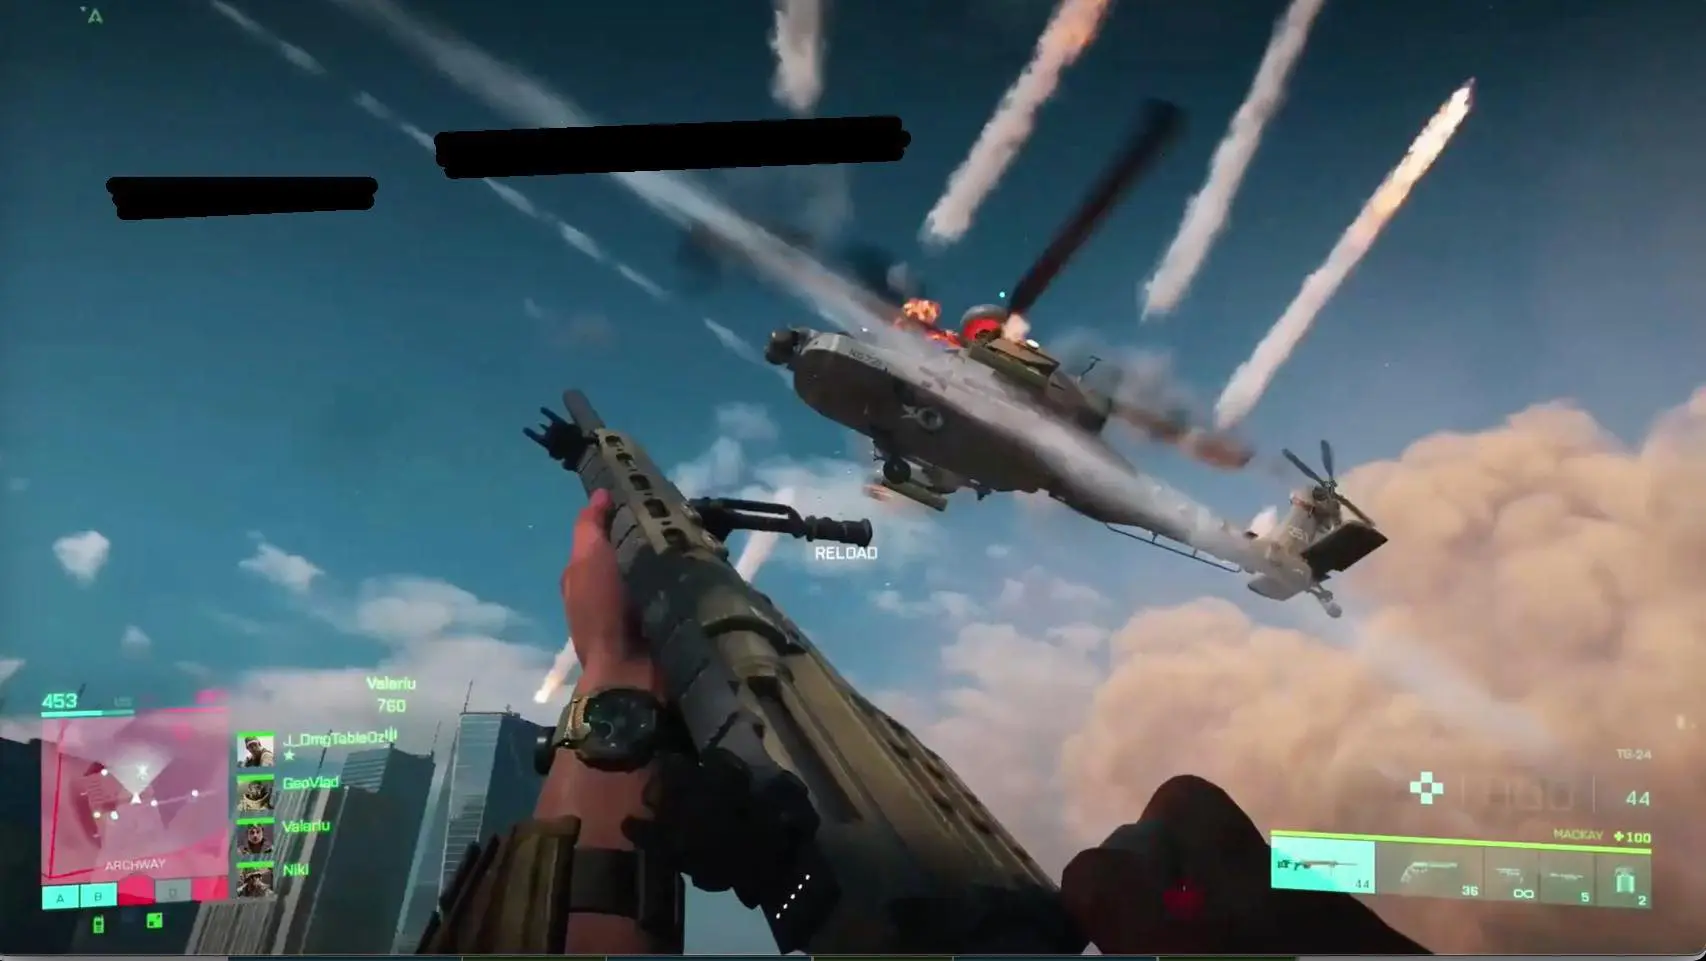 Possível imagem de Battlefield 6 com um soldado armado e um helicóptero